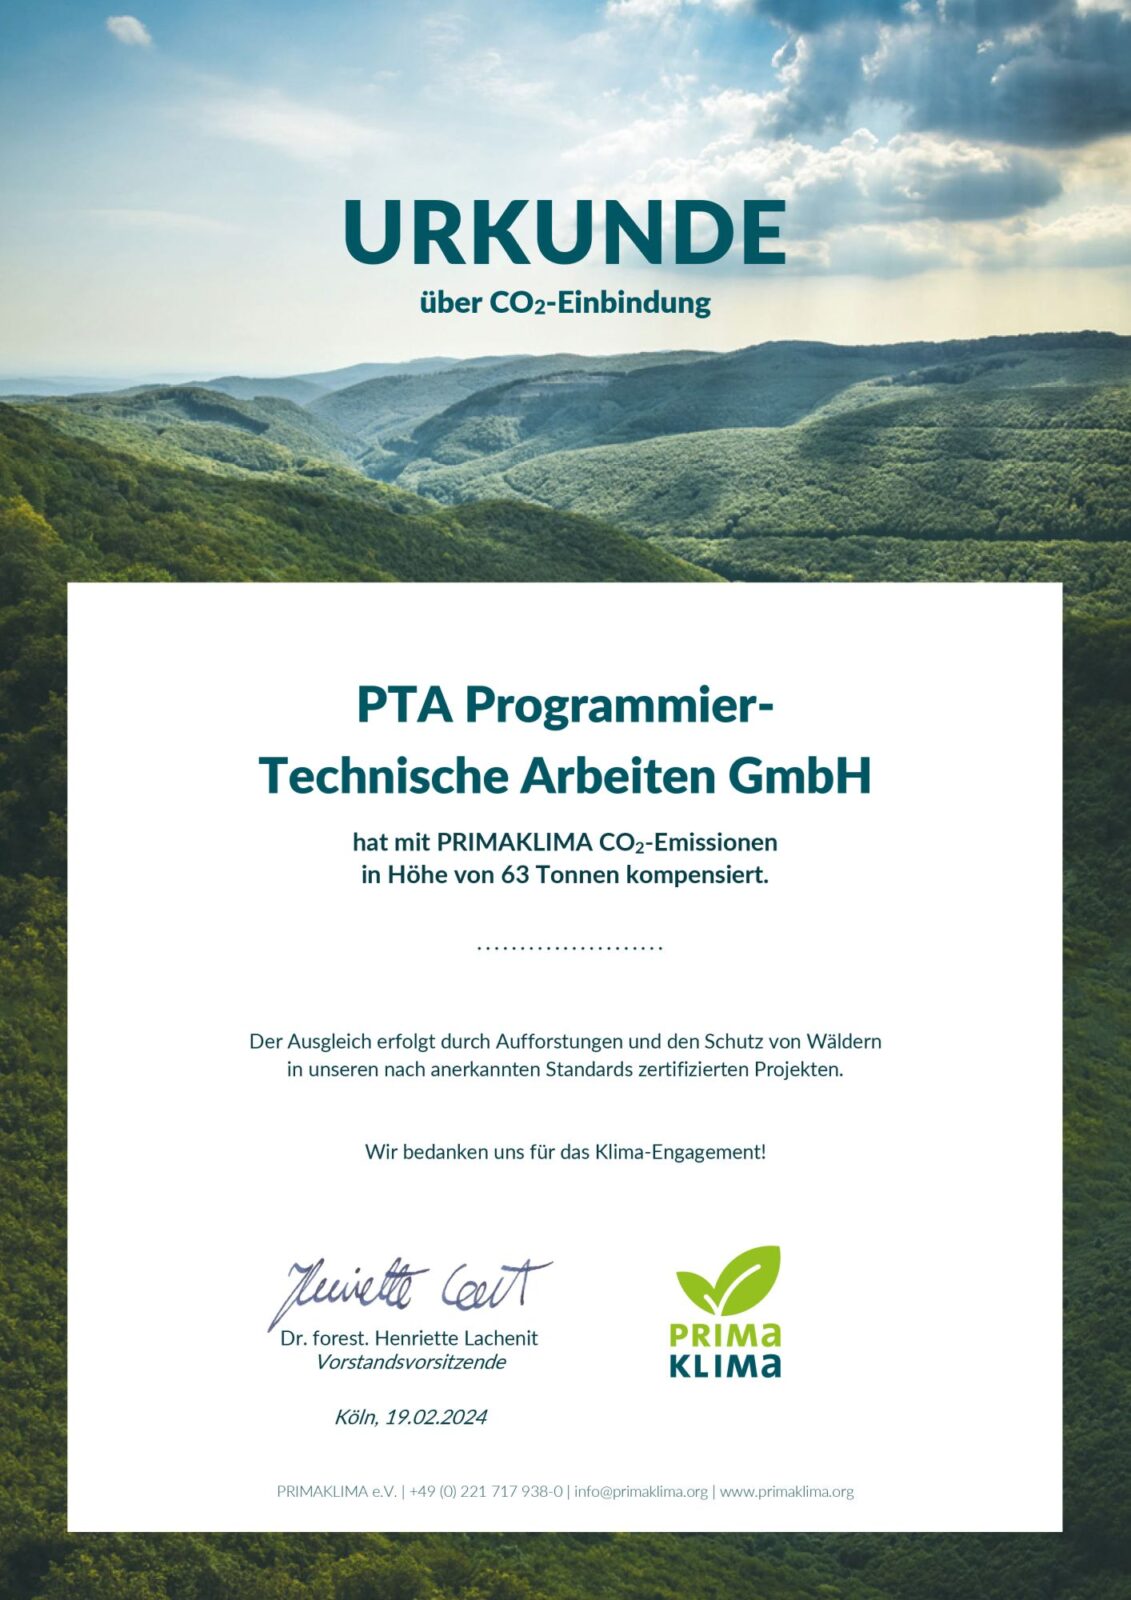 Urkunde über CO2-Einbindung der PTA IT-Beratung von PrimaKlima